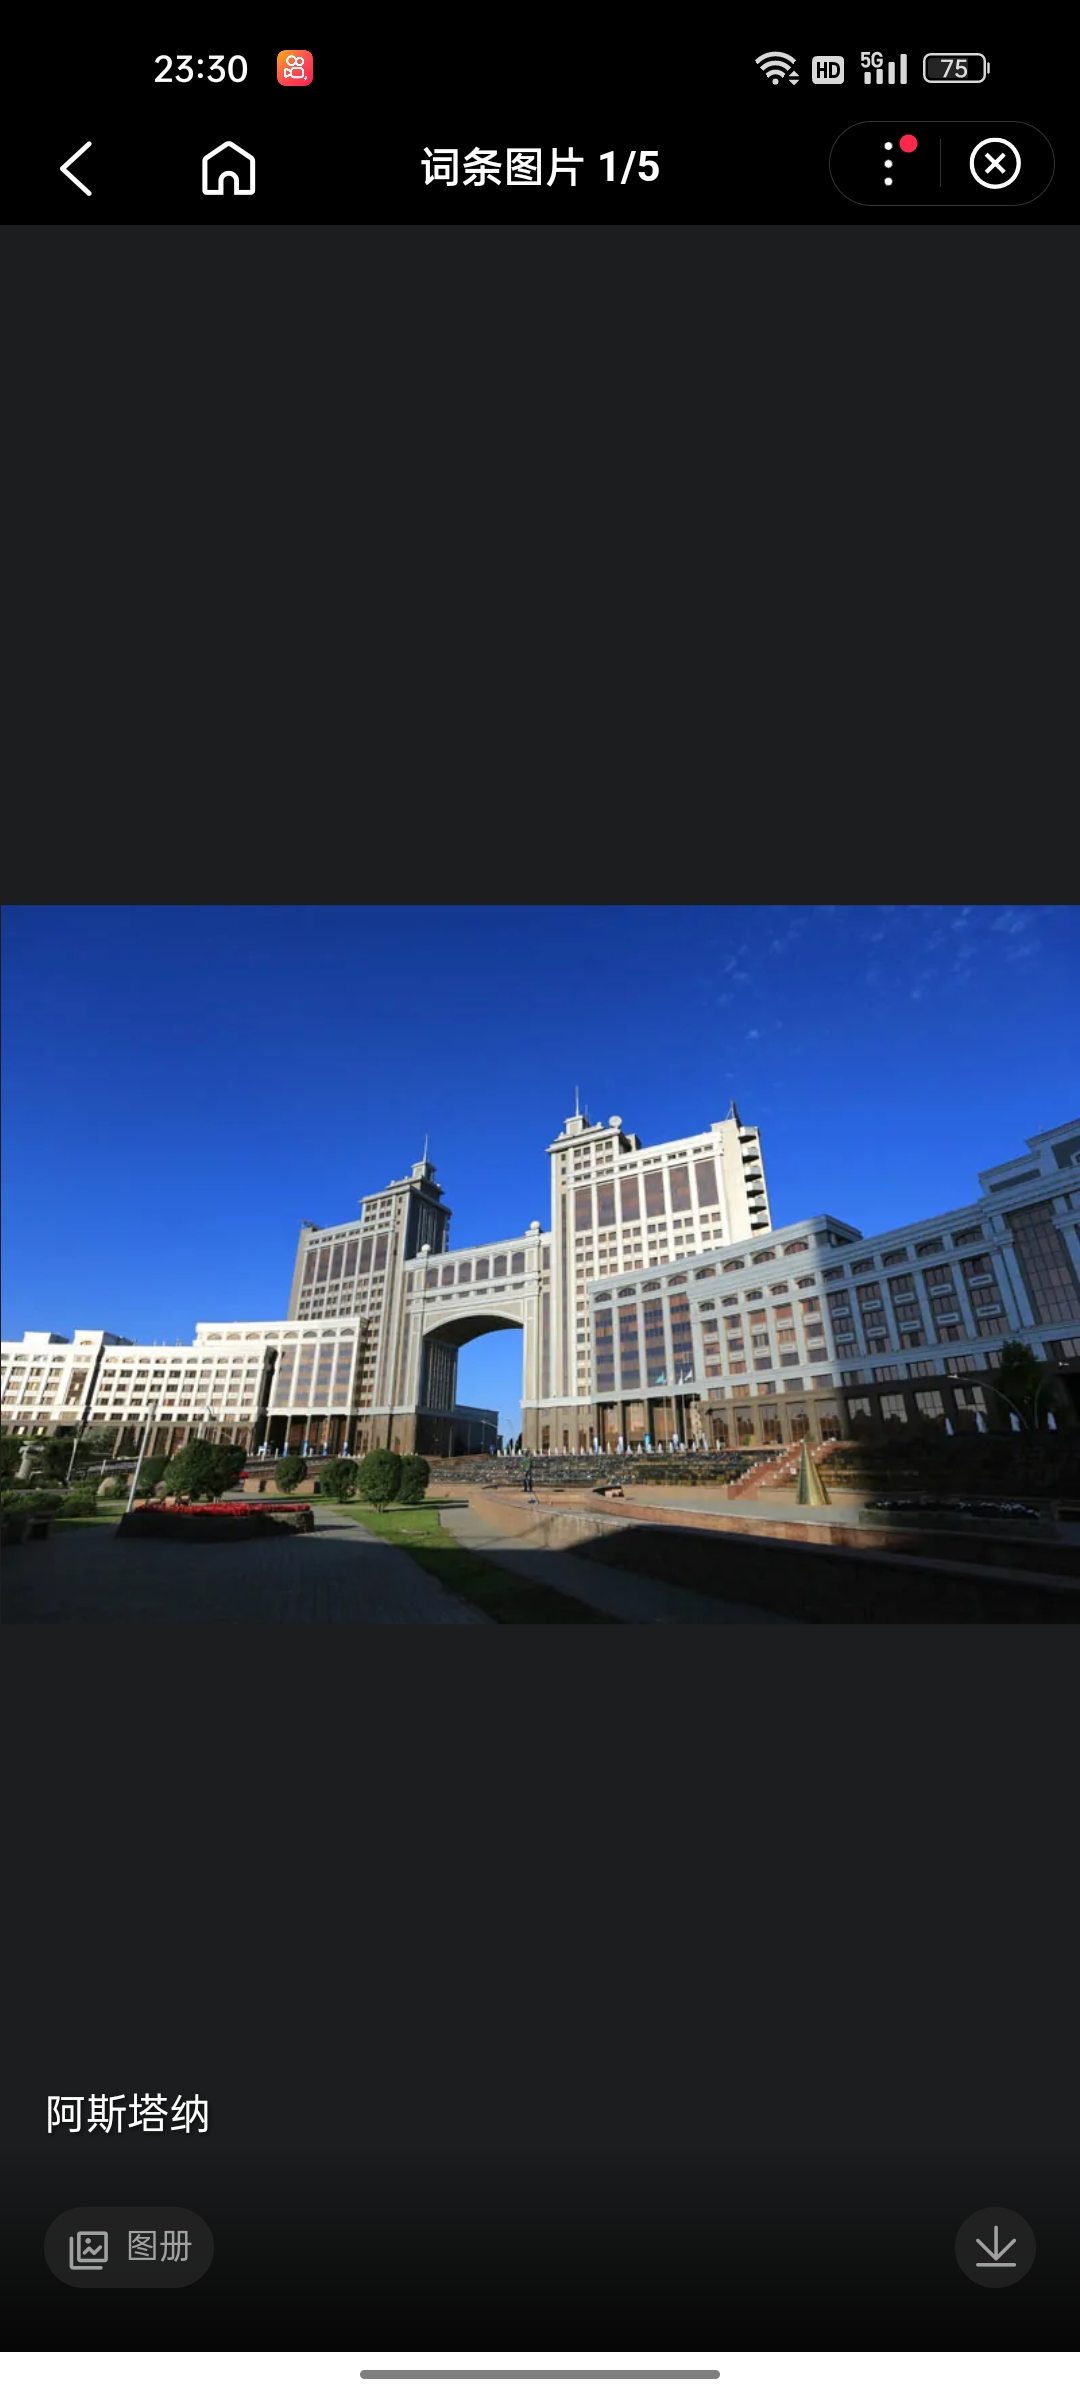 阿斯塔纳（哈萨克语：Астана；英语：Astana），是哈萨克斯坦共和国首都，原名阿克莫林斯克、切